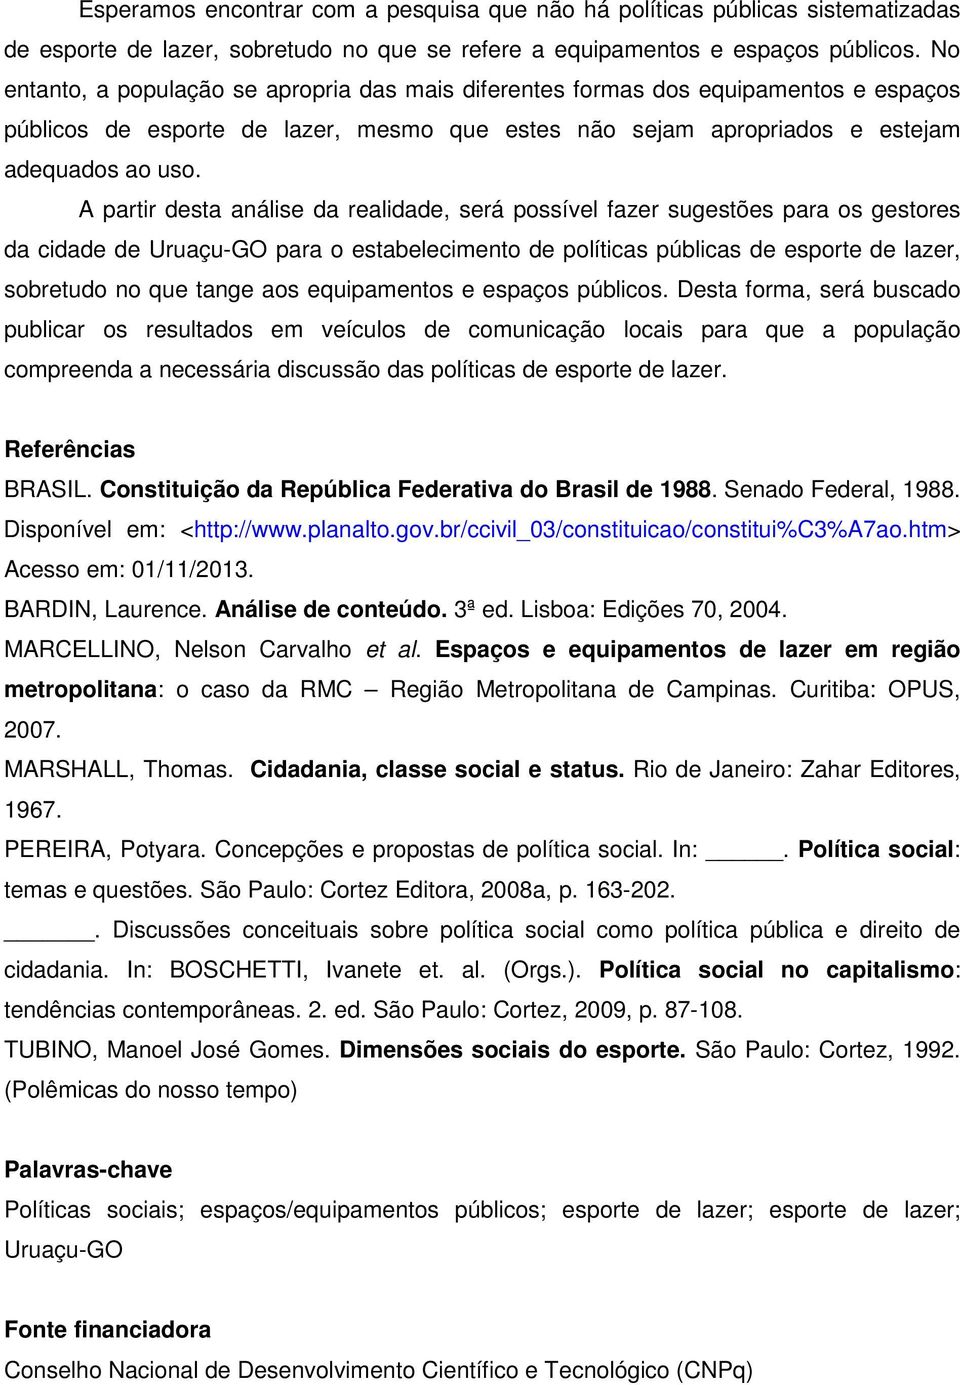 A partir desta análise da realidade, será possível fazer sugestões para os gestores da cidade de Uruaçu-GO para o estabelecimento de políticas públicas de esporte de lazer, sobretudo no que tange aos